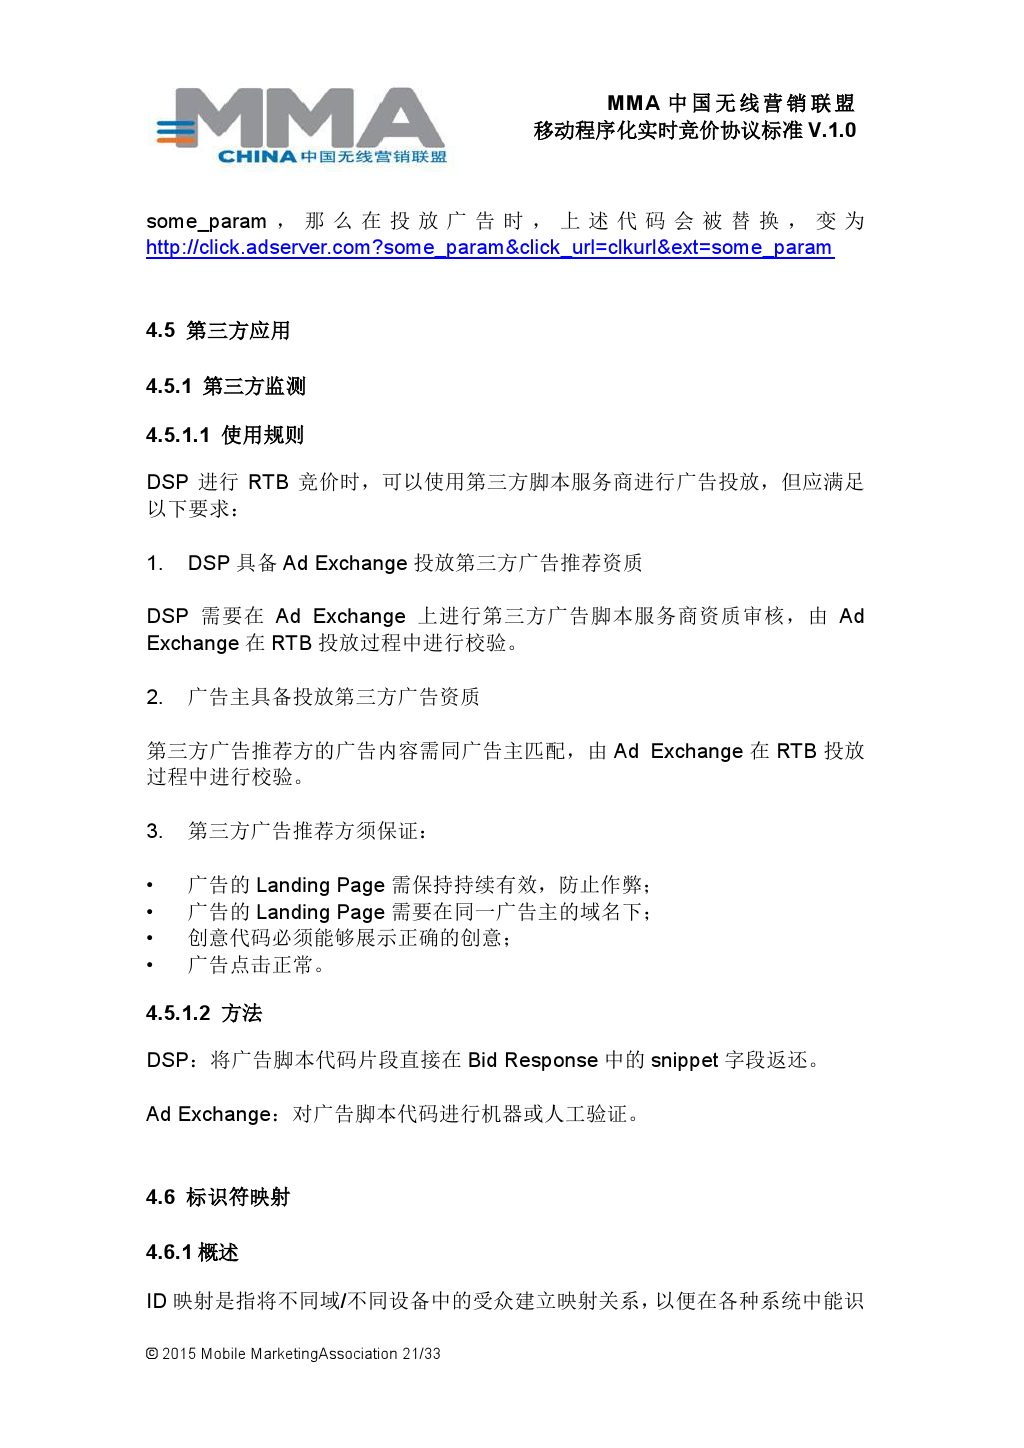 MMA中国无线营销联盟移动程序化实时竞价协议标准V.1.0_000022